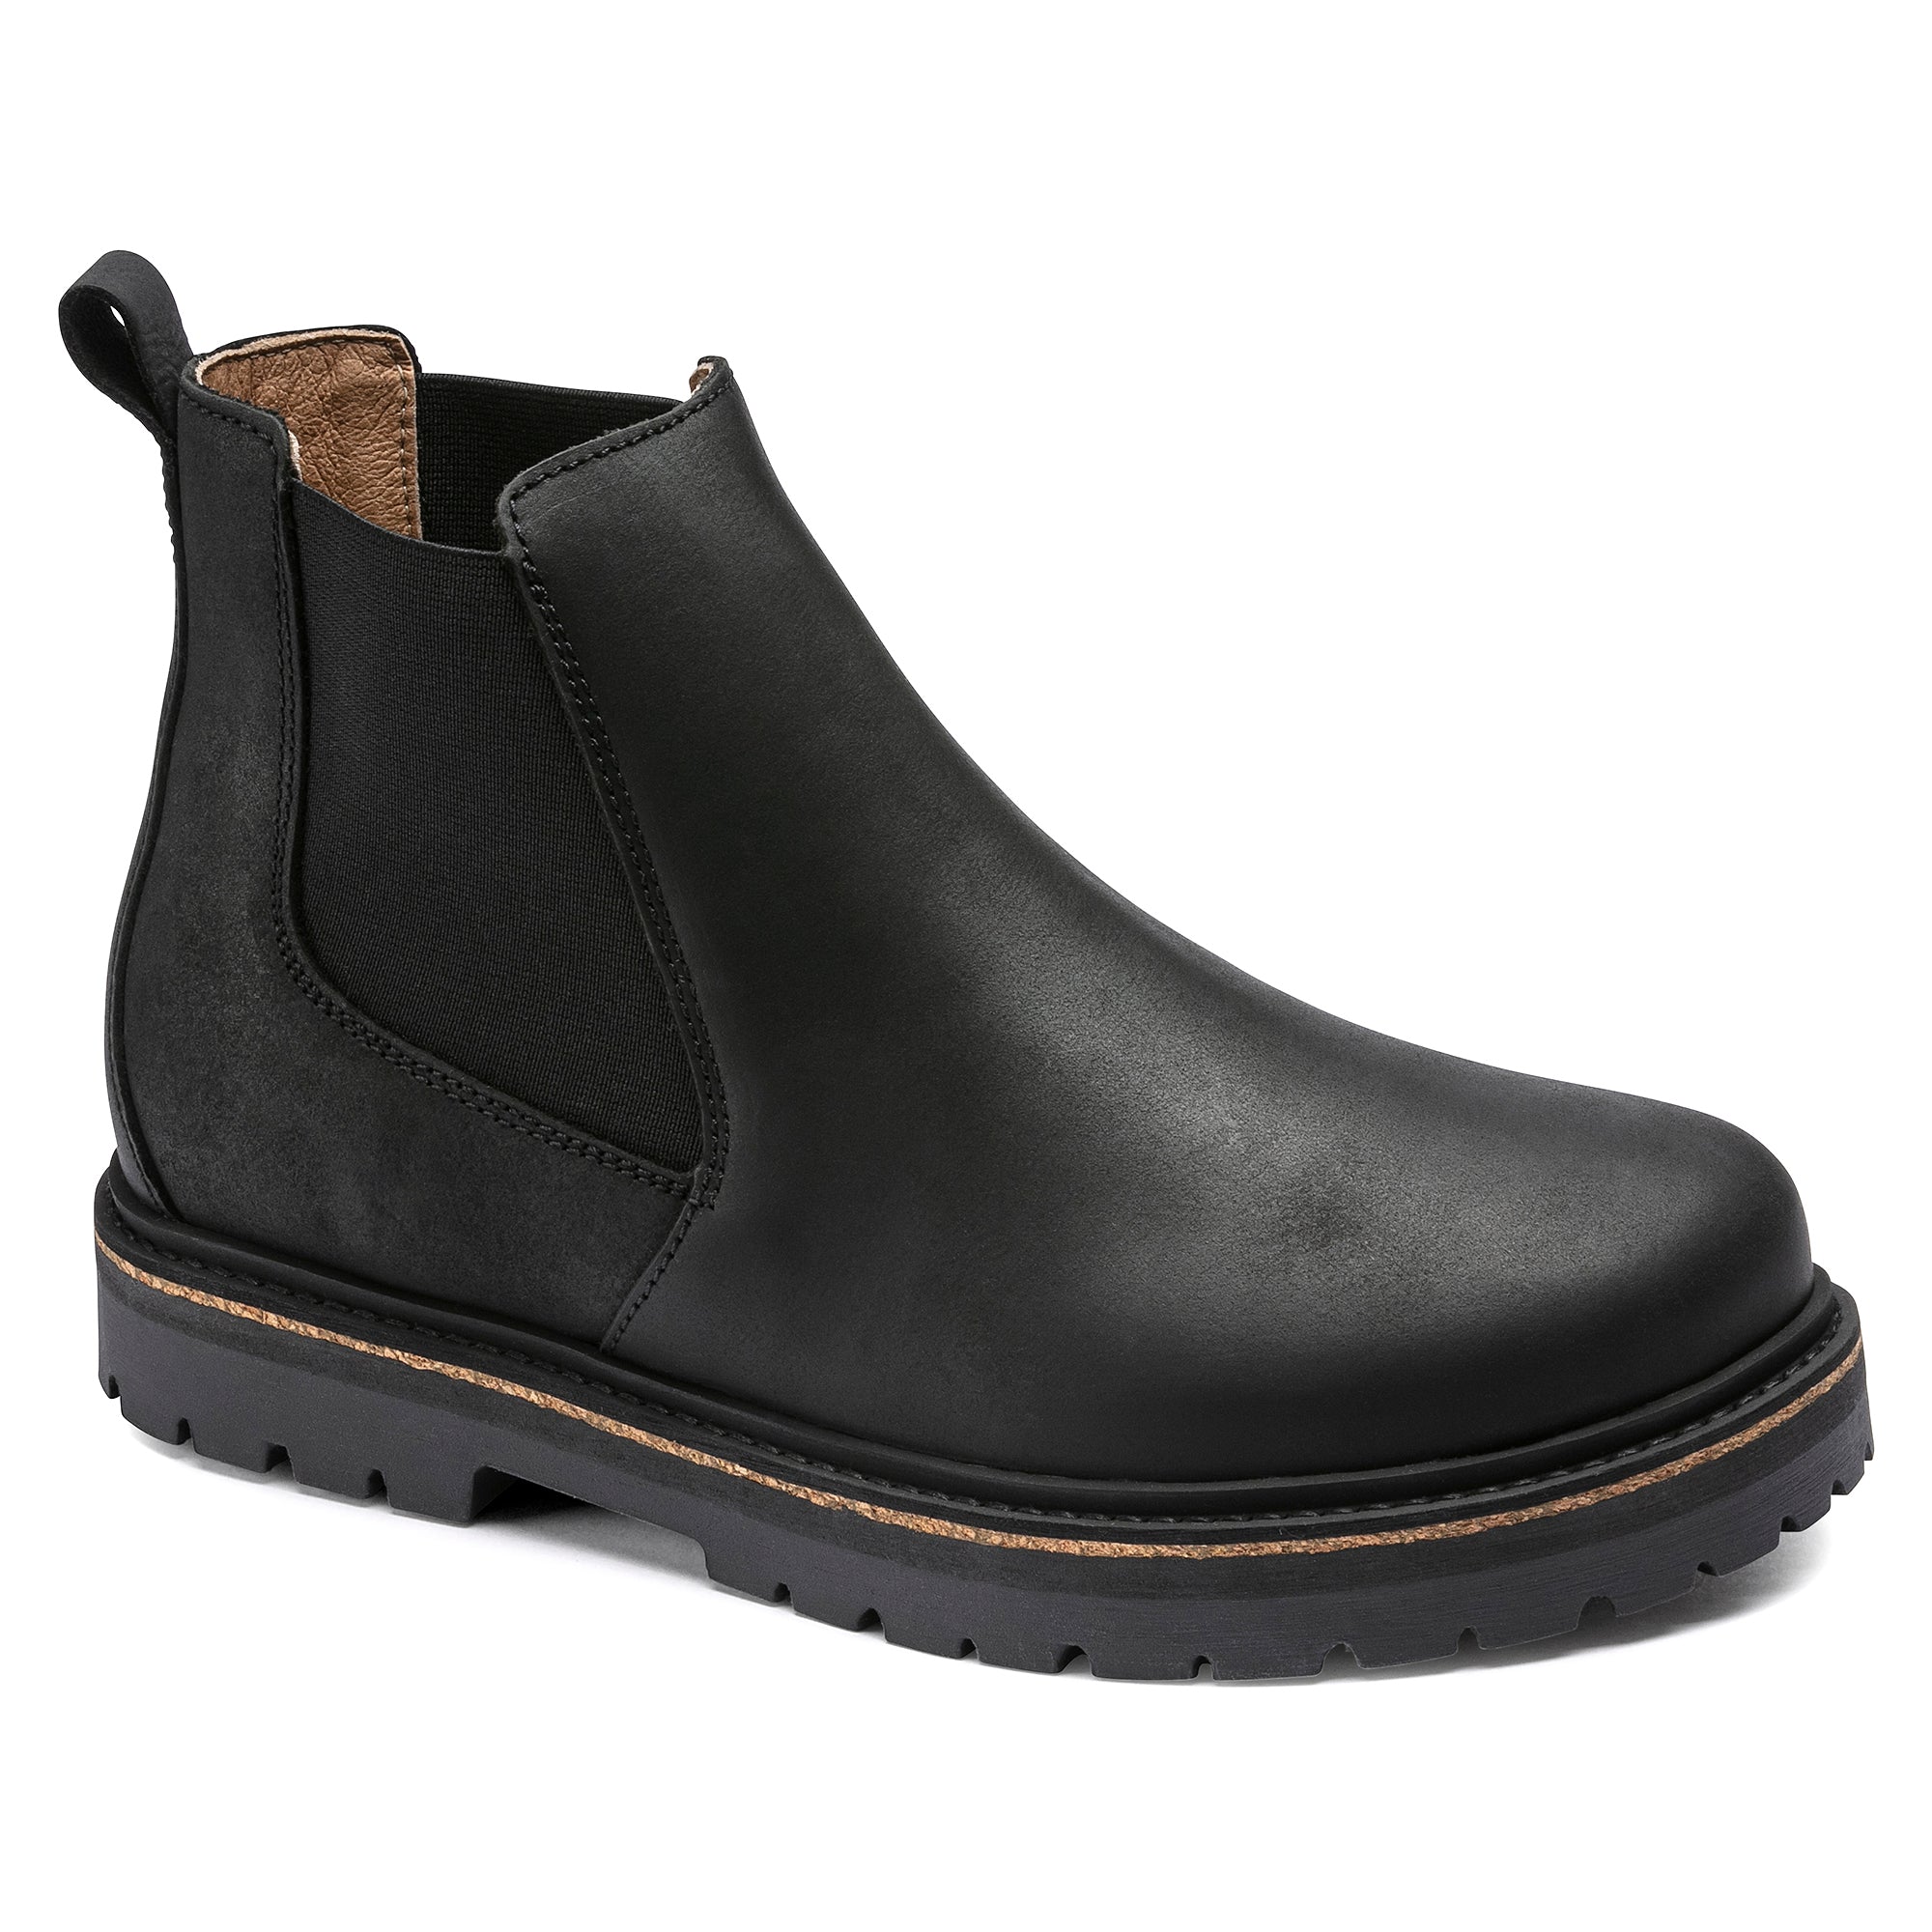 Birkenstock Stalon II 1017317 Women's Black Nubuck Leather Ankle Boots